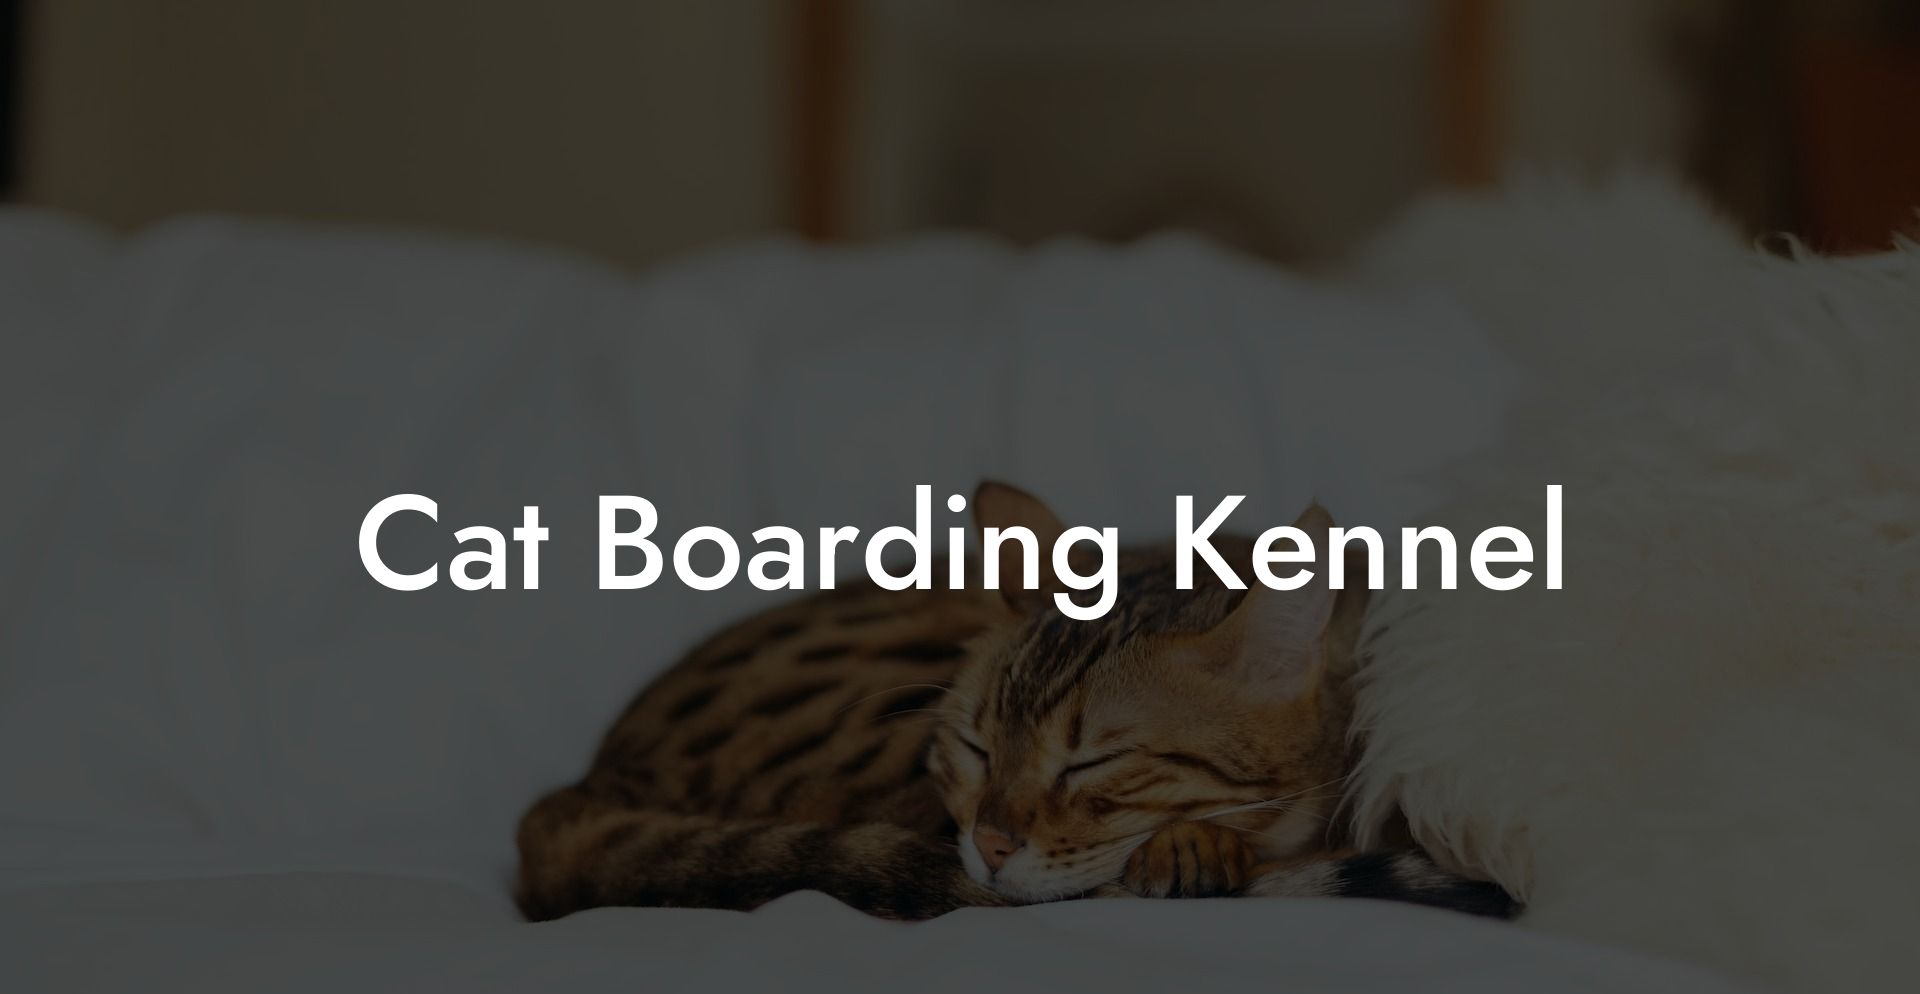 Cat Boarding Kennel